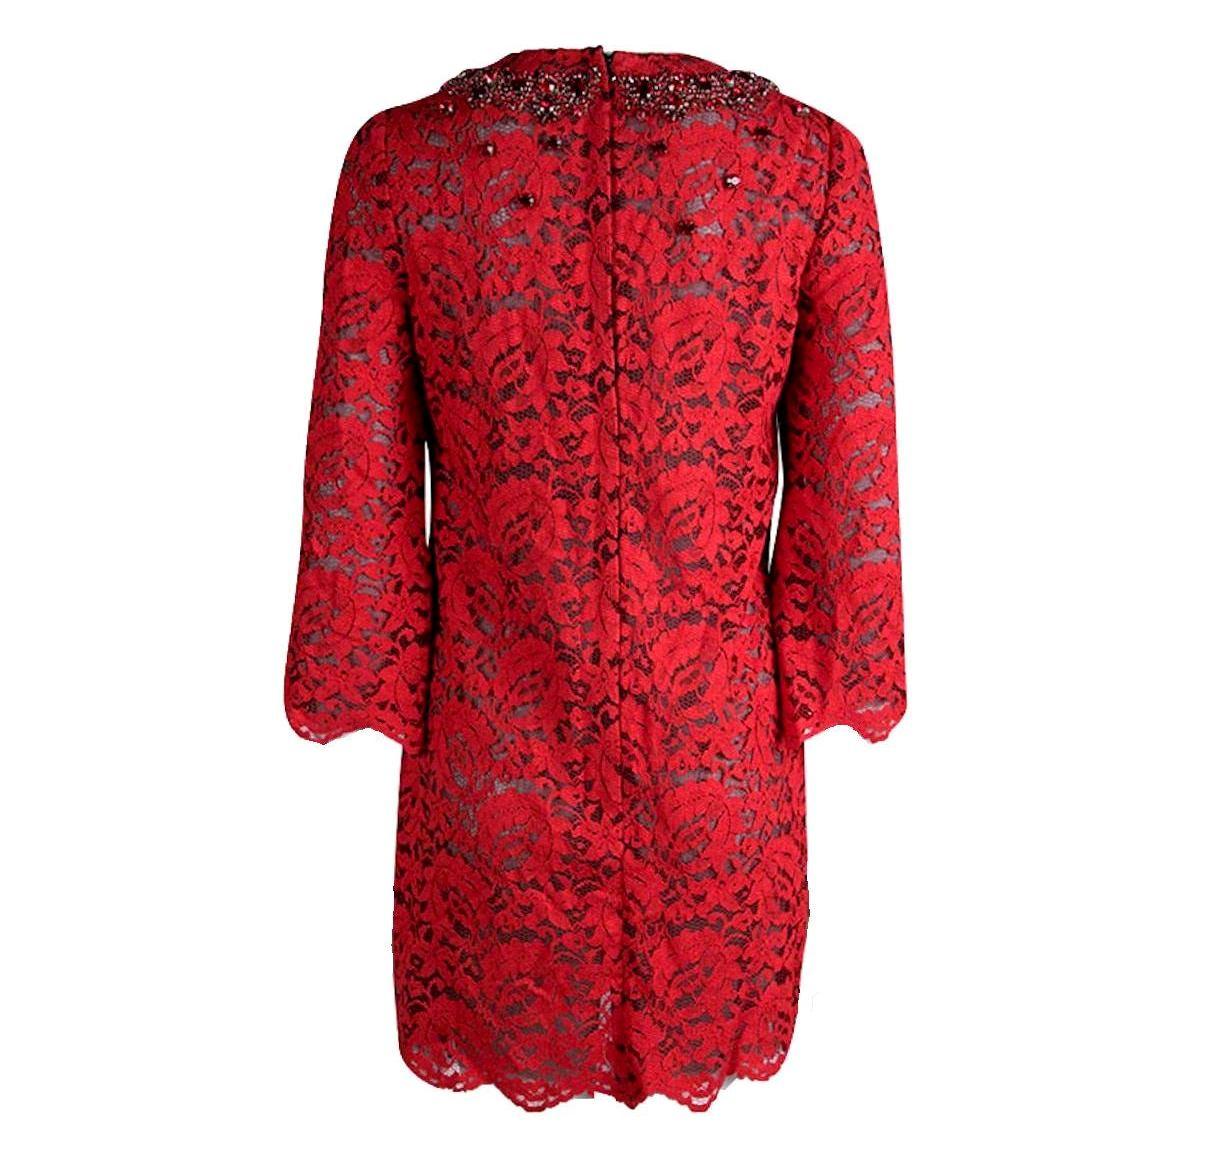 
Découpée dans une dentelle rouge cardinal, Dolce & Gabbana s'inspire de l'époque rétro avec cette mini-robe à la cuisse généreuse. Une parsemée de cristaux rubis à l'encolure accroche la lumière, donnant à cette pièce élégante une dose de